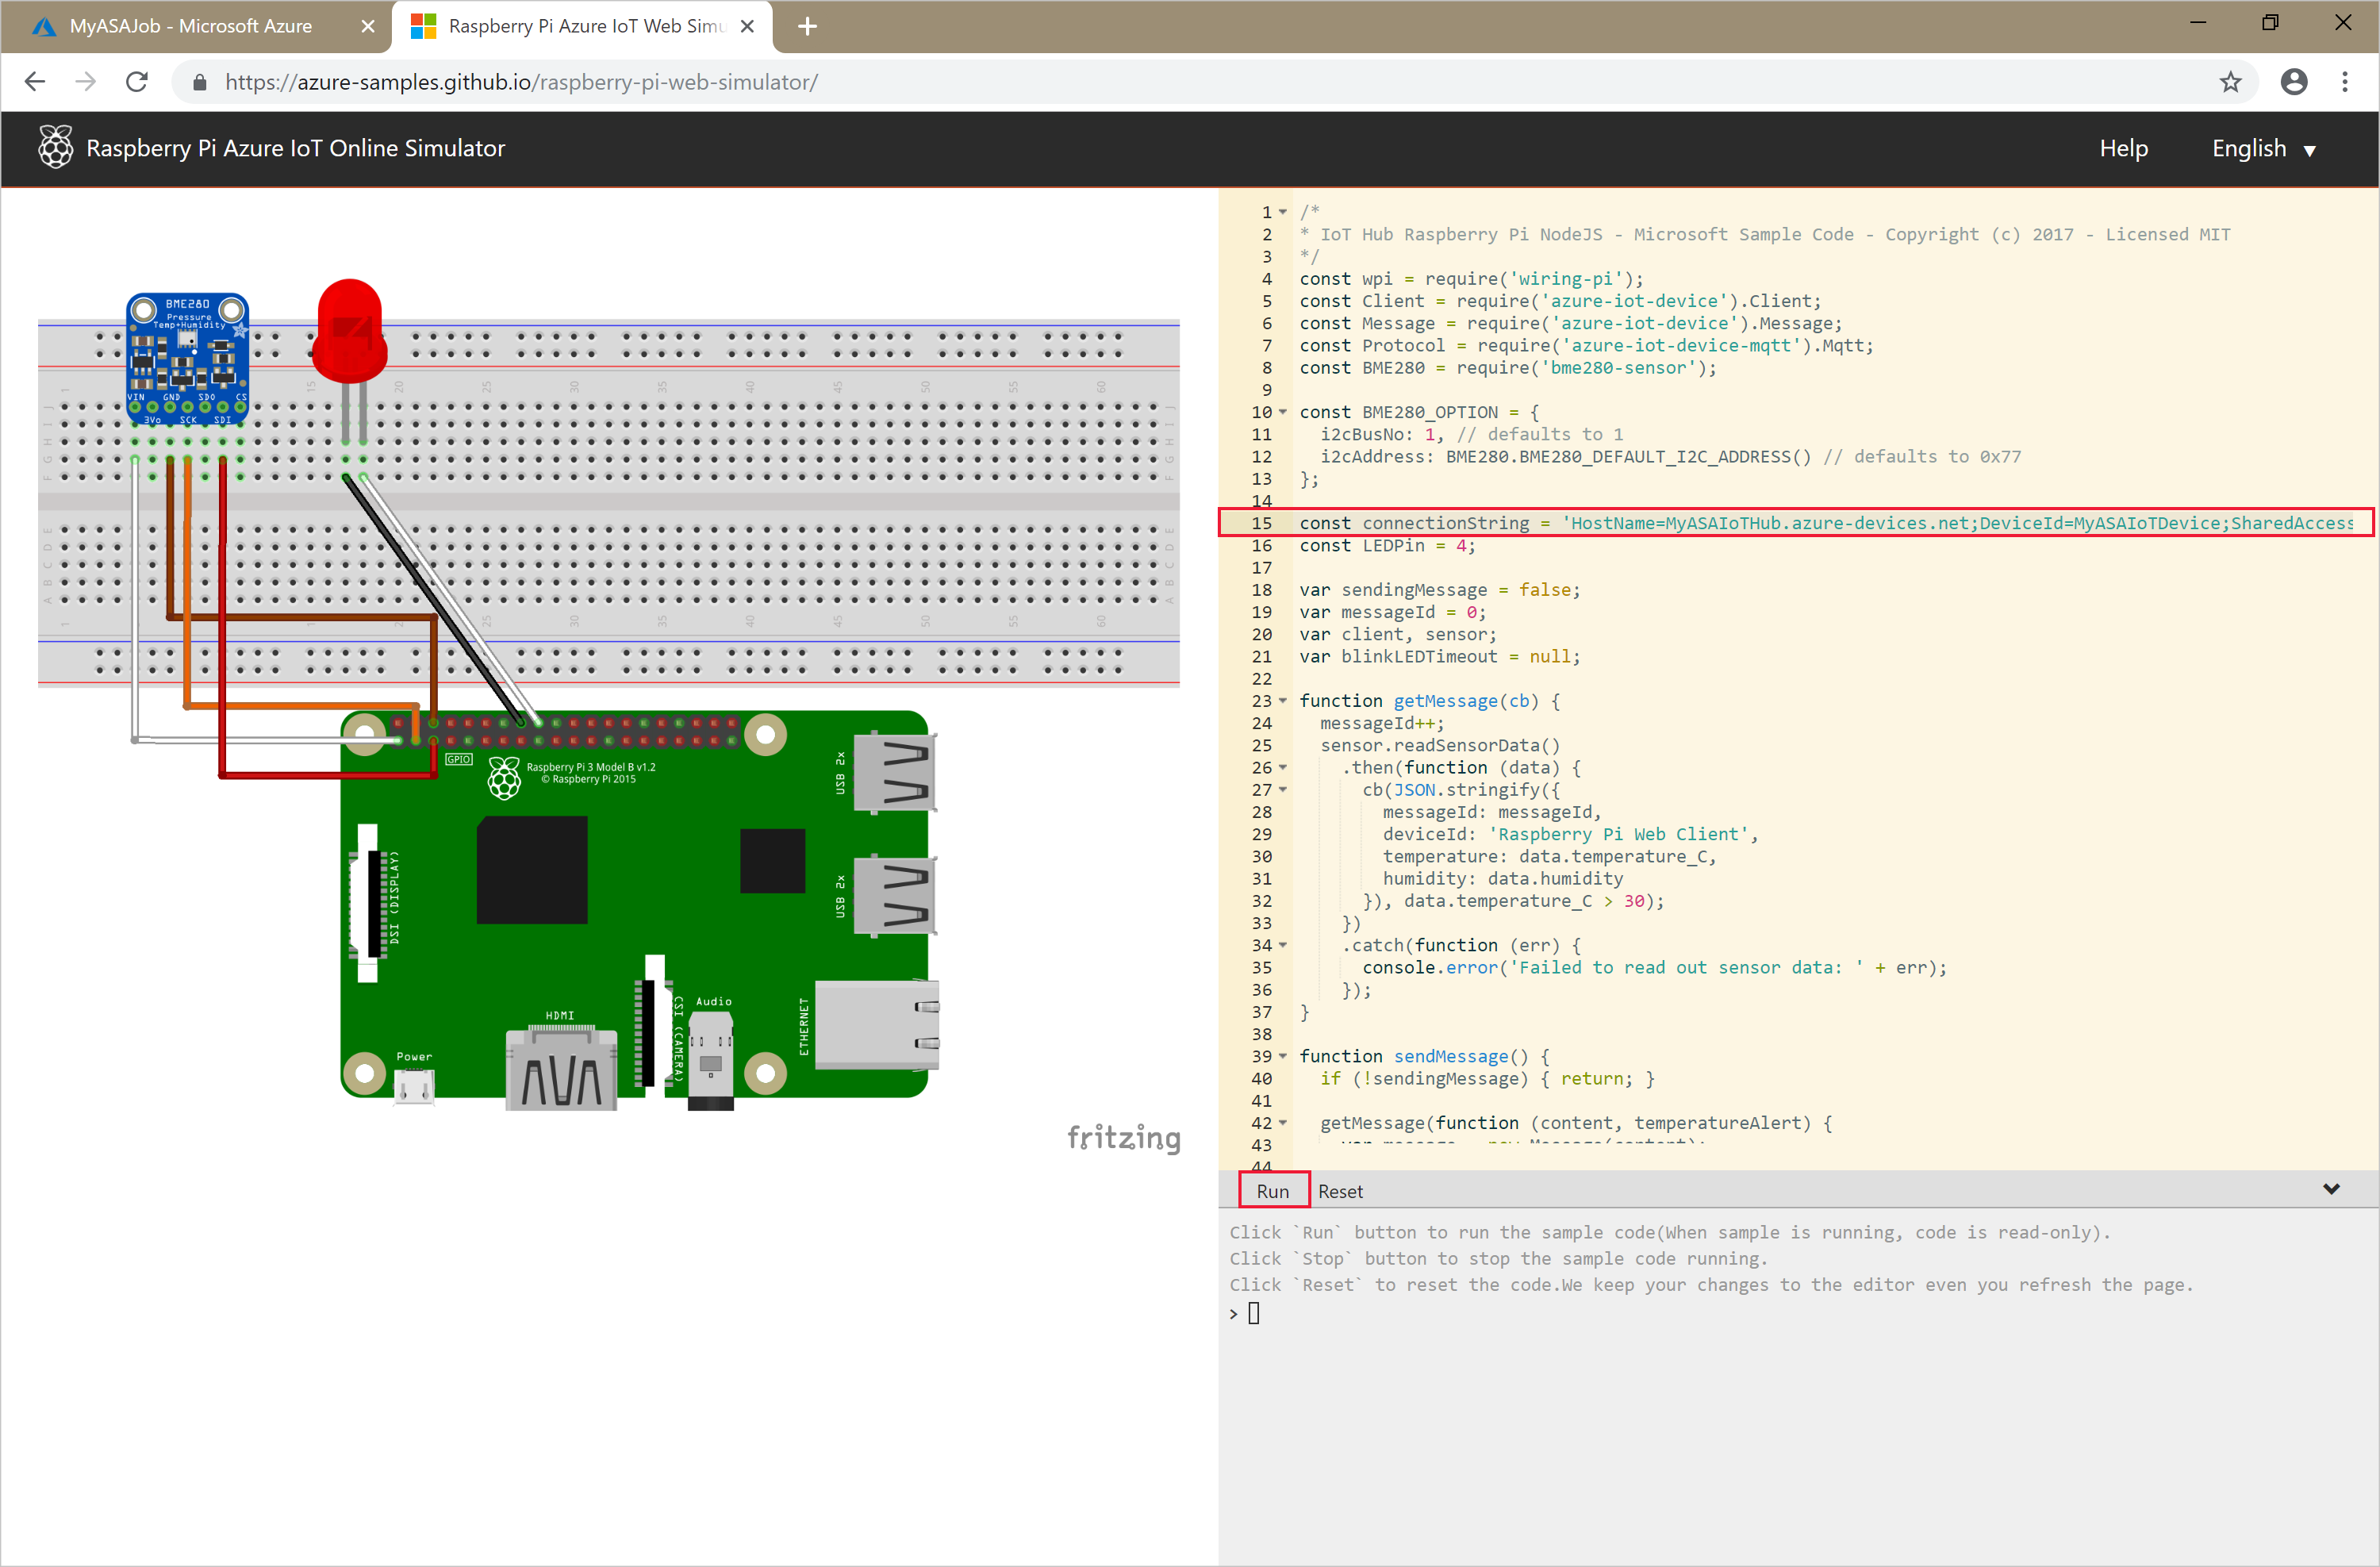 Screenshot mostrando o Raspberry Pi Azure IoT Online Simulator com saída.